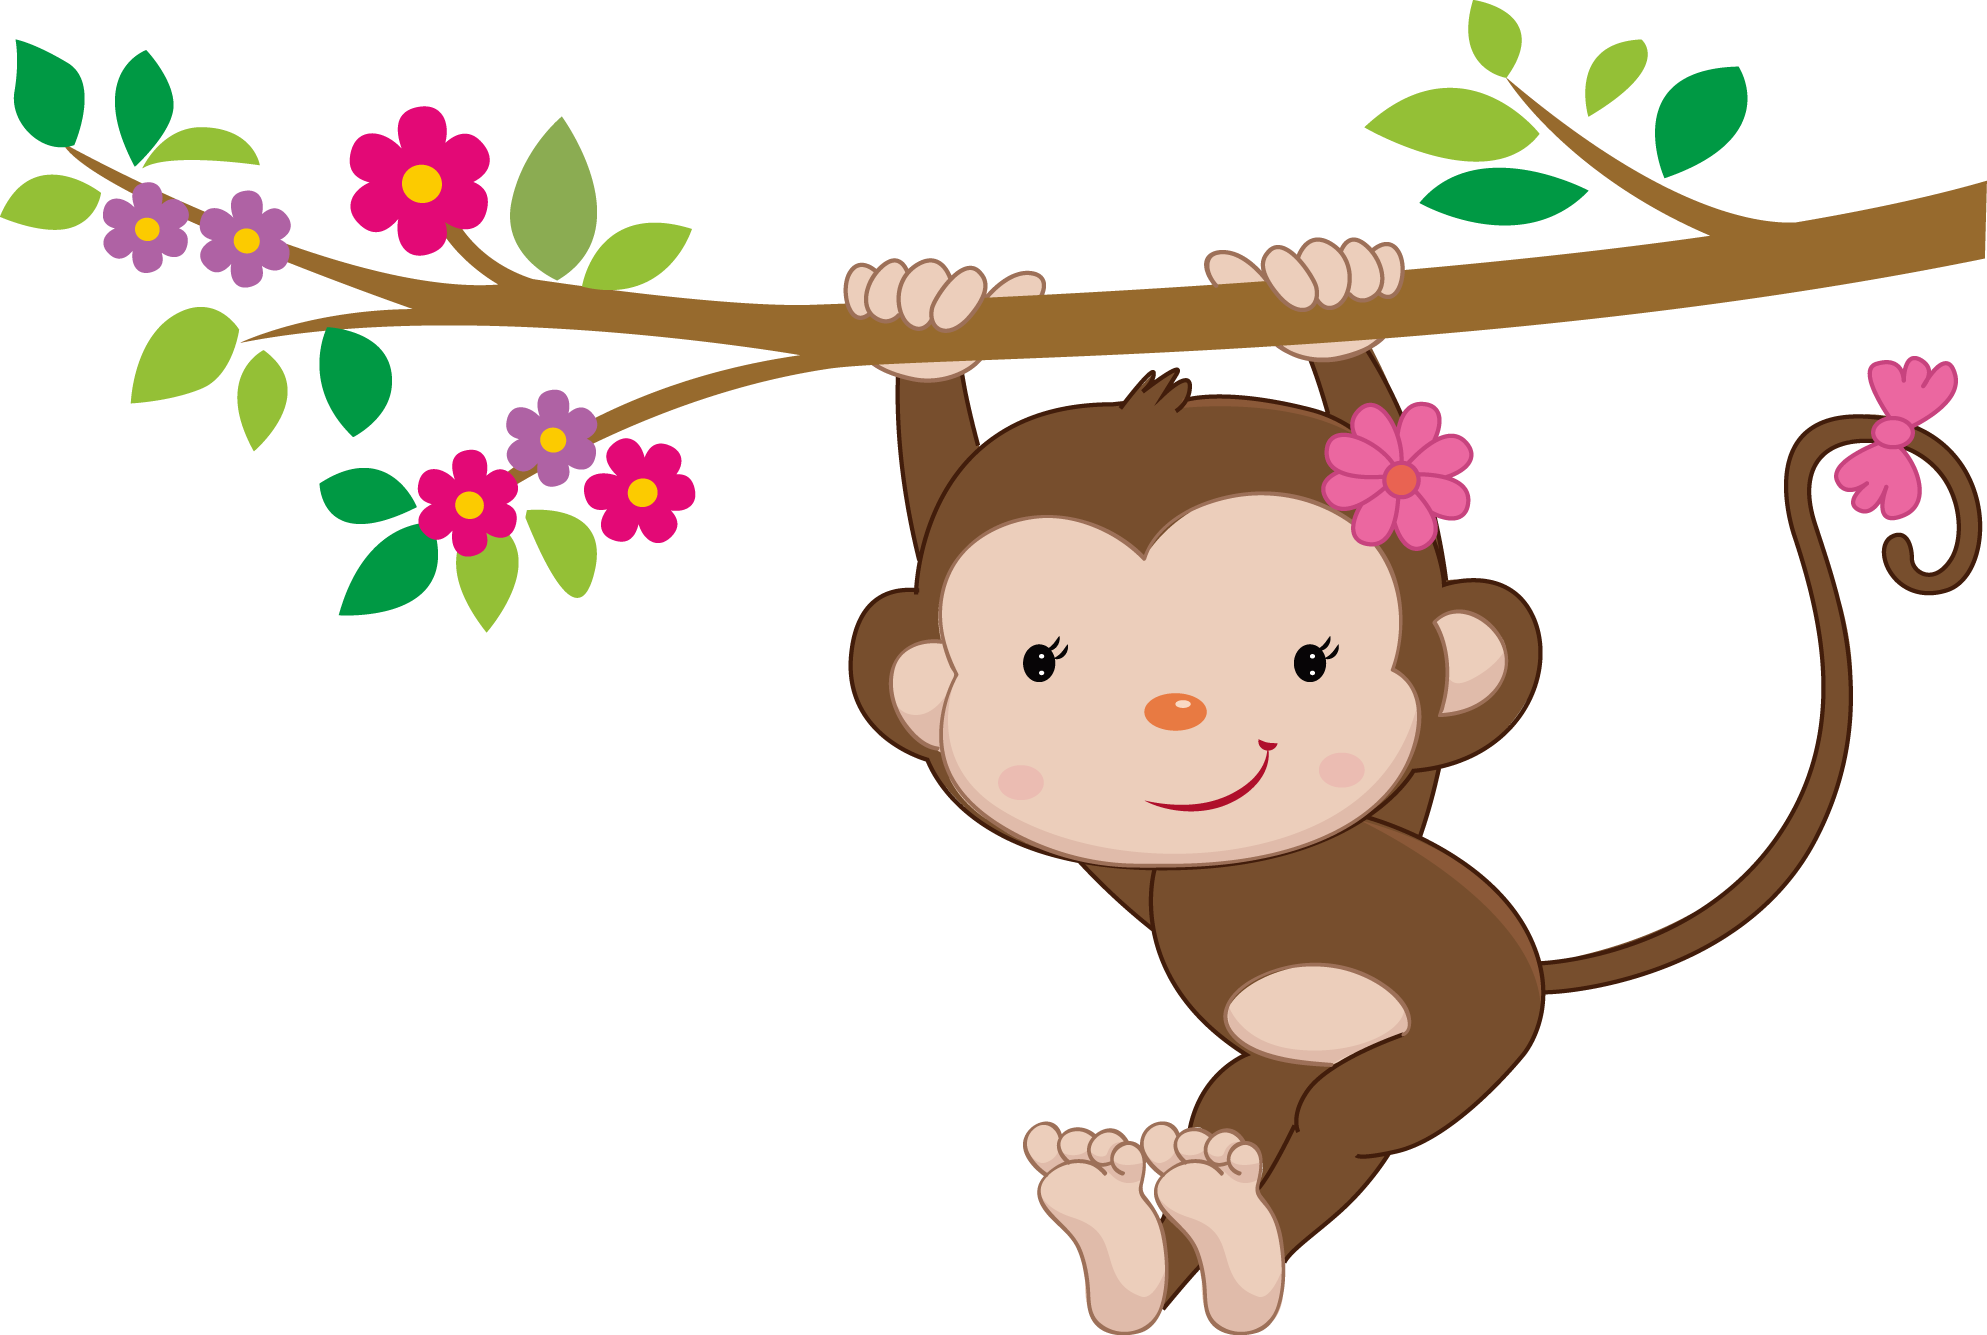 Changossala De Monoanimales - Swinging Baby Monkey Throw Blanket (1987x1335)